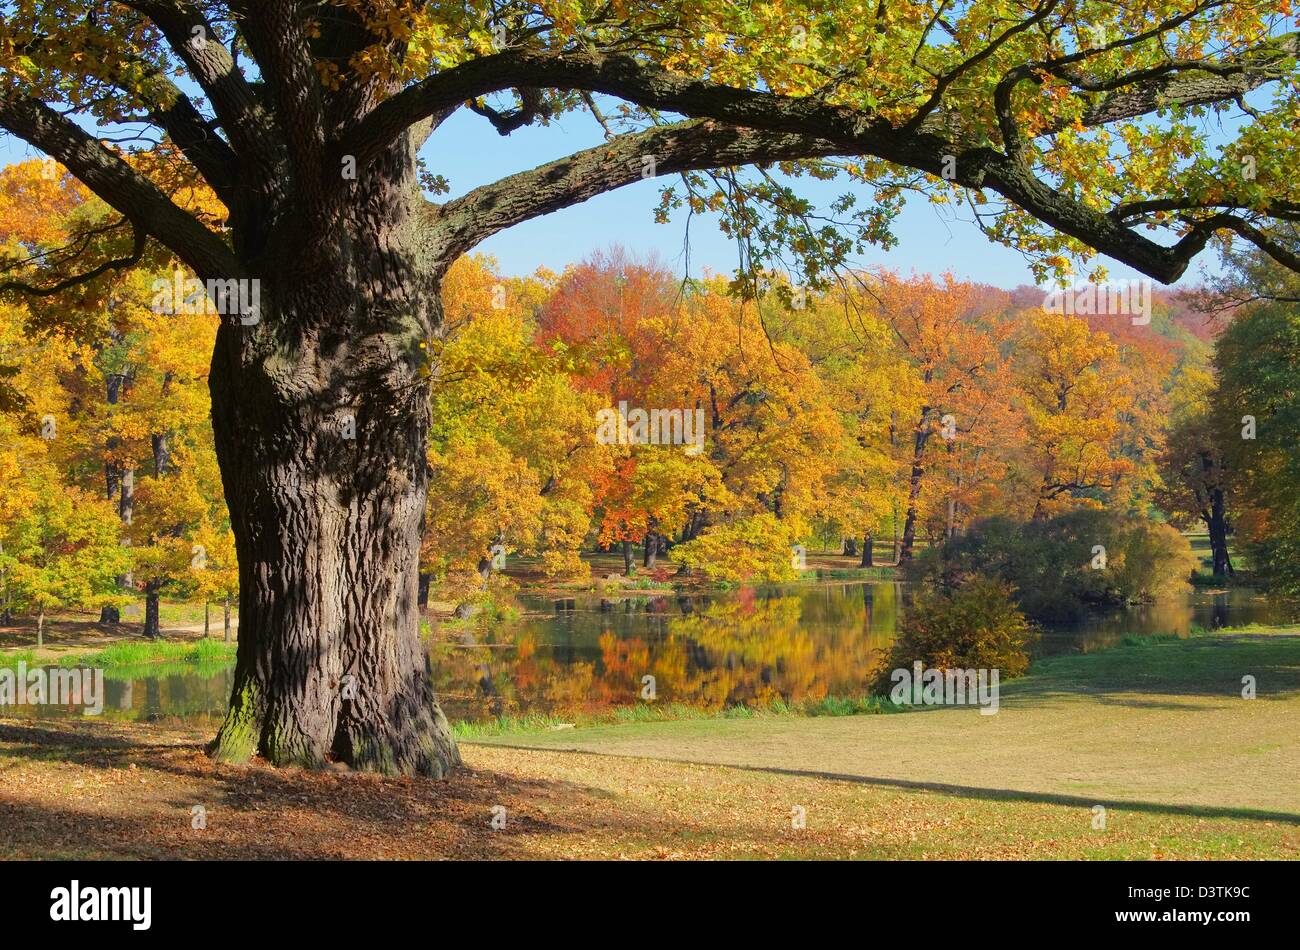 Eiche im Herbst - Oak tree in fall 02 Stock Photo